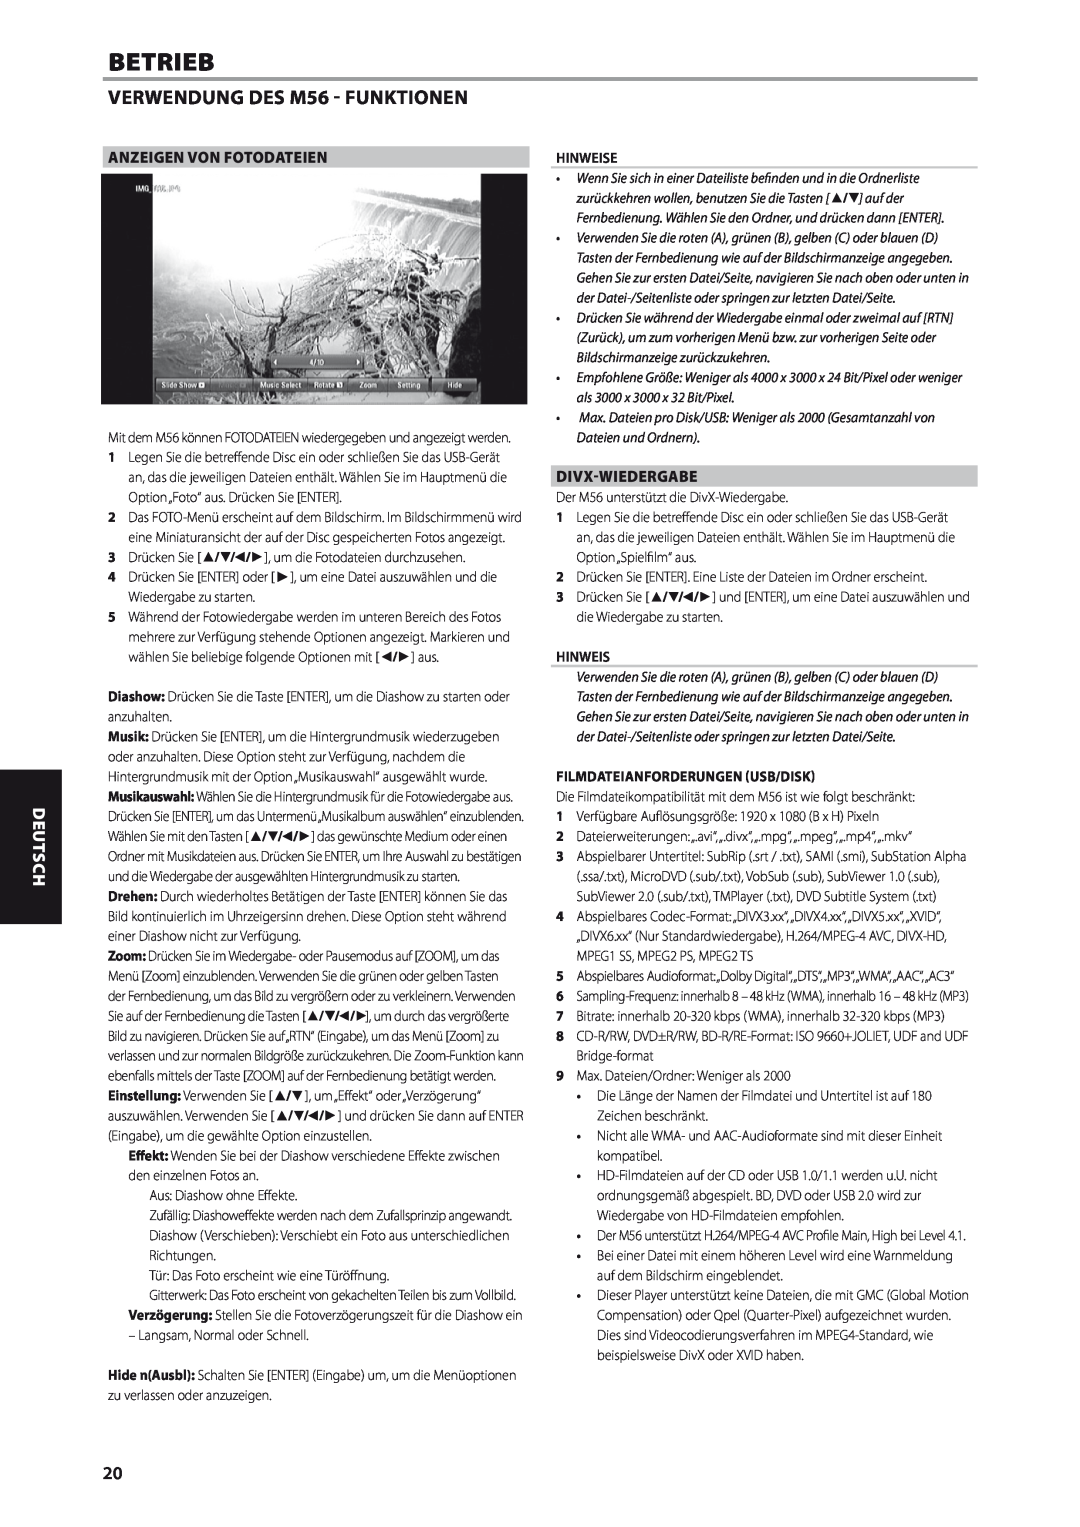 NAD M56 manual Anzeigen Von Fotodateien, Divx-Wiedergabe, Filmdateianforderungen Usb/Disk, Betrieb, Deutsch, Hinweise 